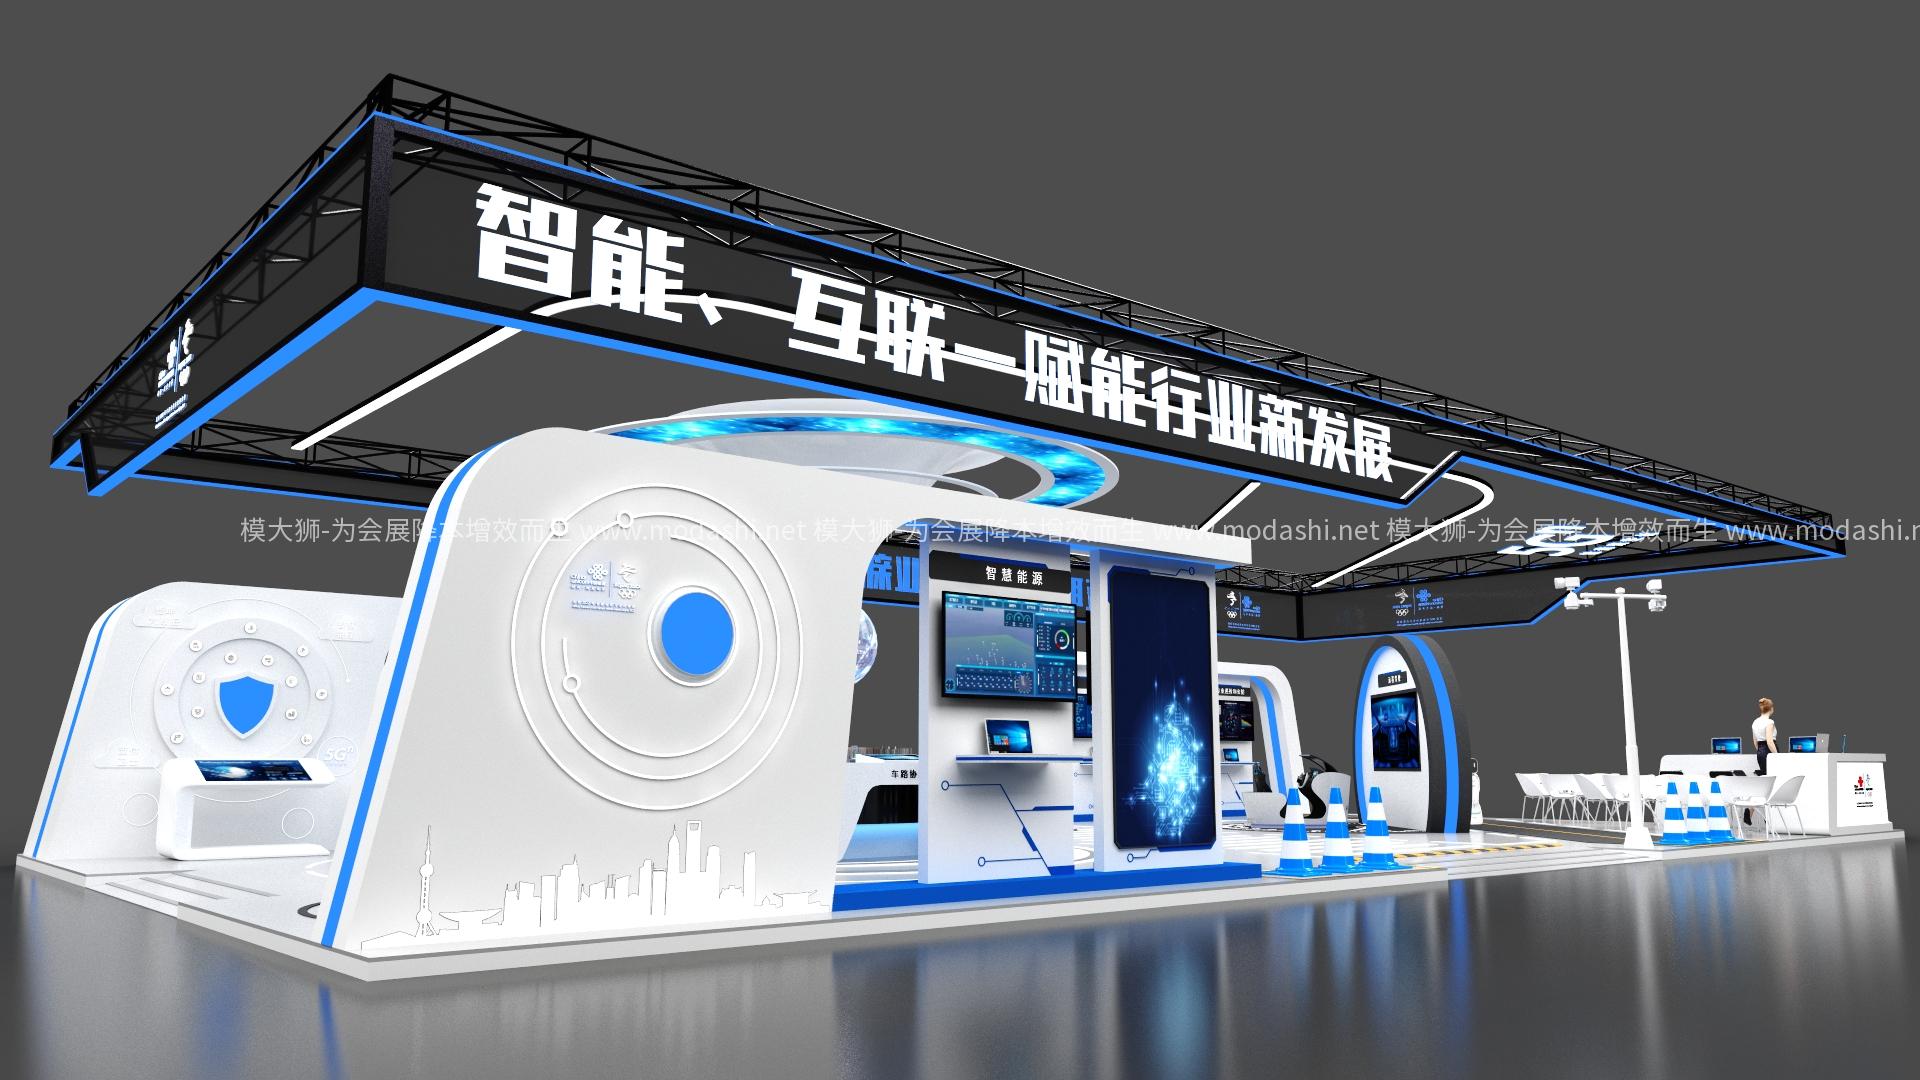 中国联通展示展台3D模型